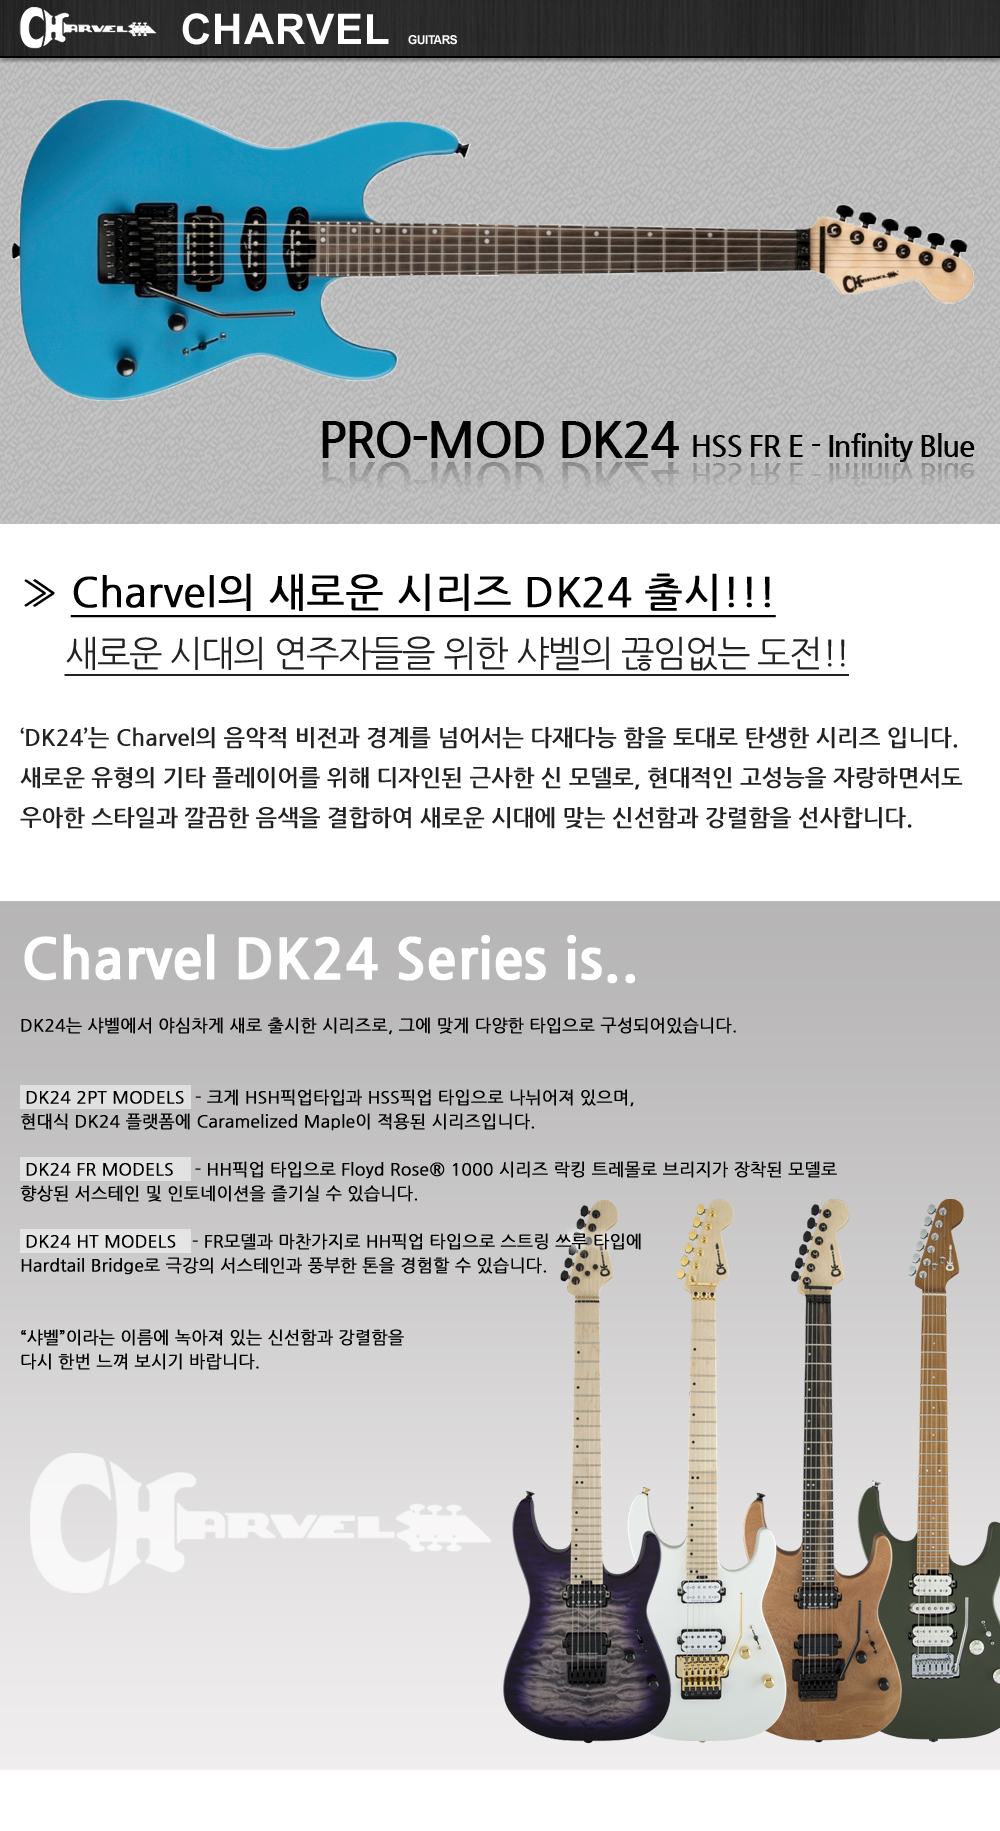 Chravel-DK24-HSS-FR-E-InfinityBlue_1_131517.jpg